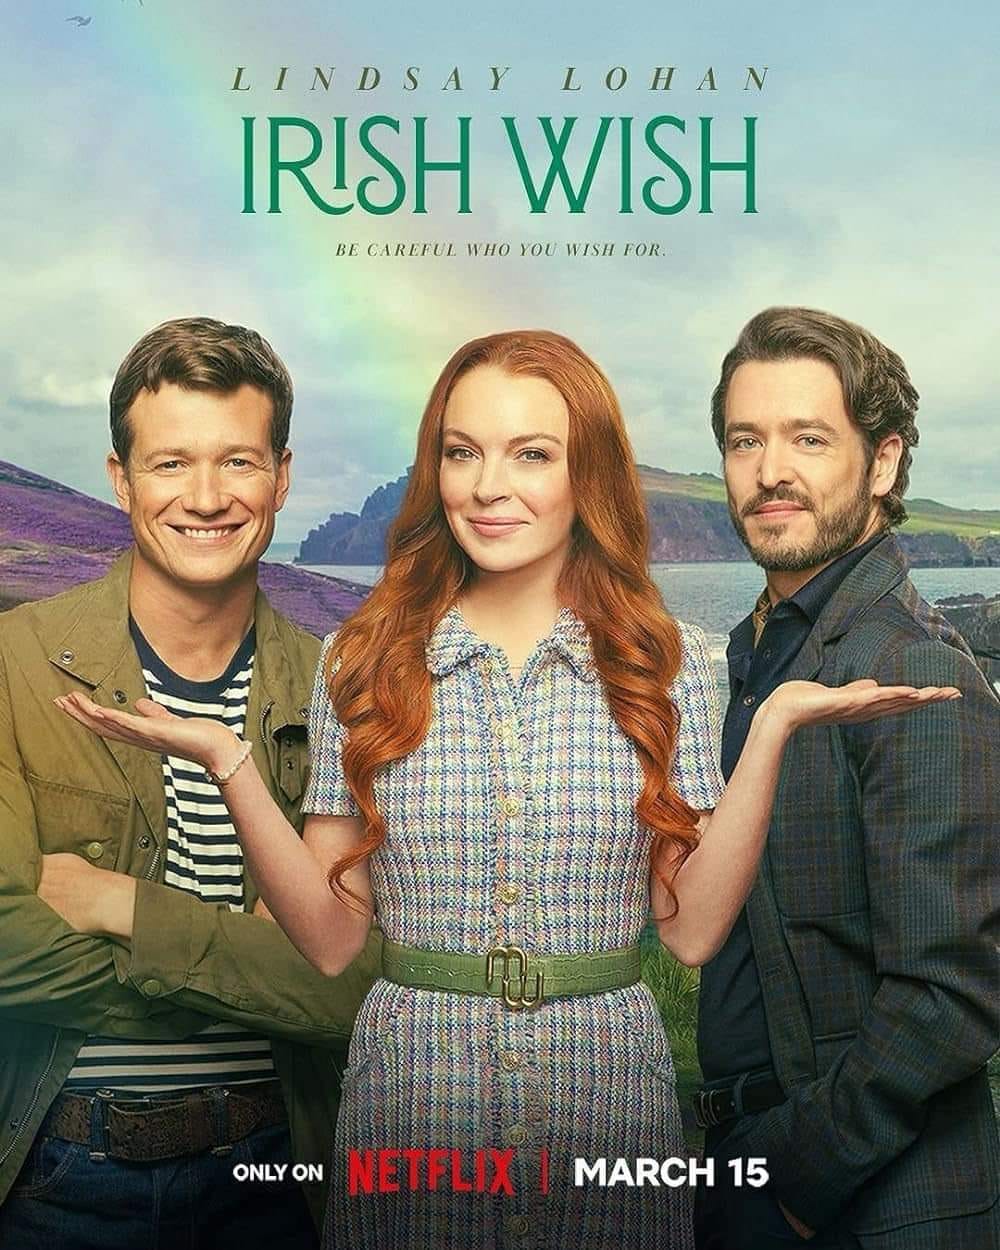 Kocham Cię jak Irlandię czyli dlaczego warto obejrzeć „Irish Wish” ?